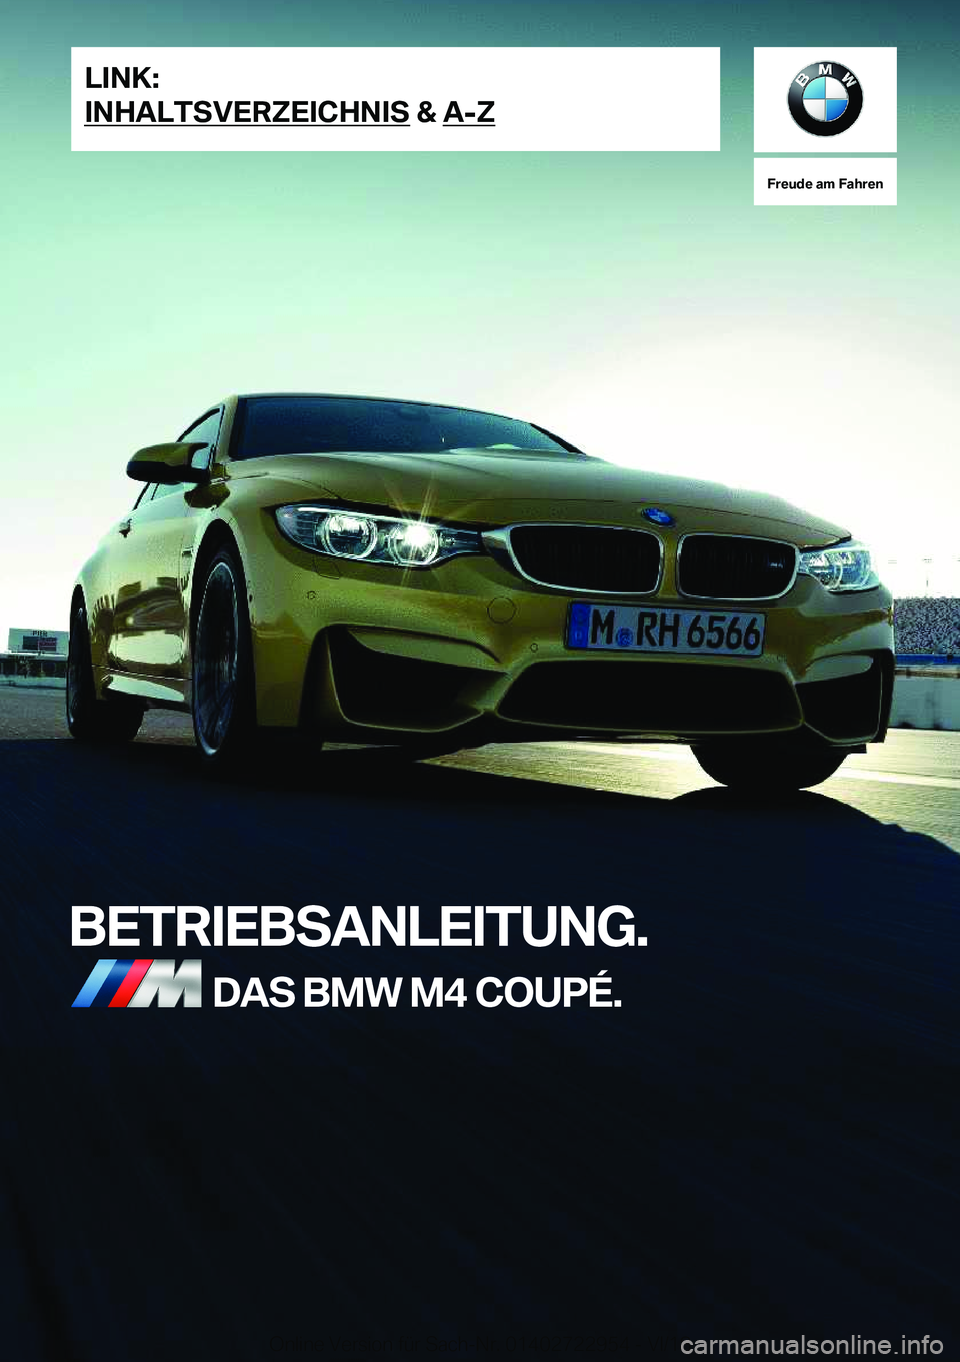 BMW M4 2019  Betriebsanleitungen (in German) �F�r�e�u�d�e��a�m��F�a�h�r�e�n
�B�E�T�R�I�E�B�S�A�N�L�E�I�T�U�N�G�.�D�A�S��B�M�W��M�4��C�O�U�P�